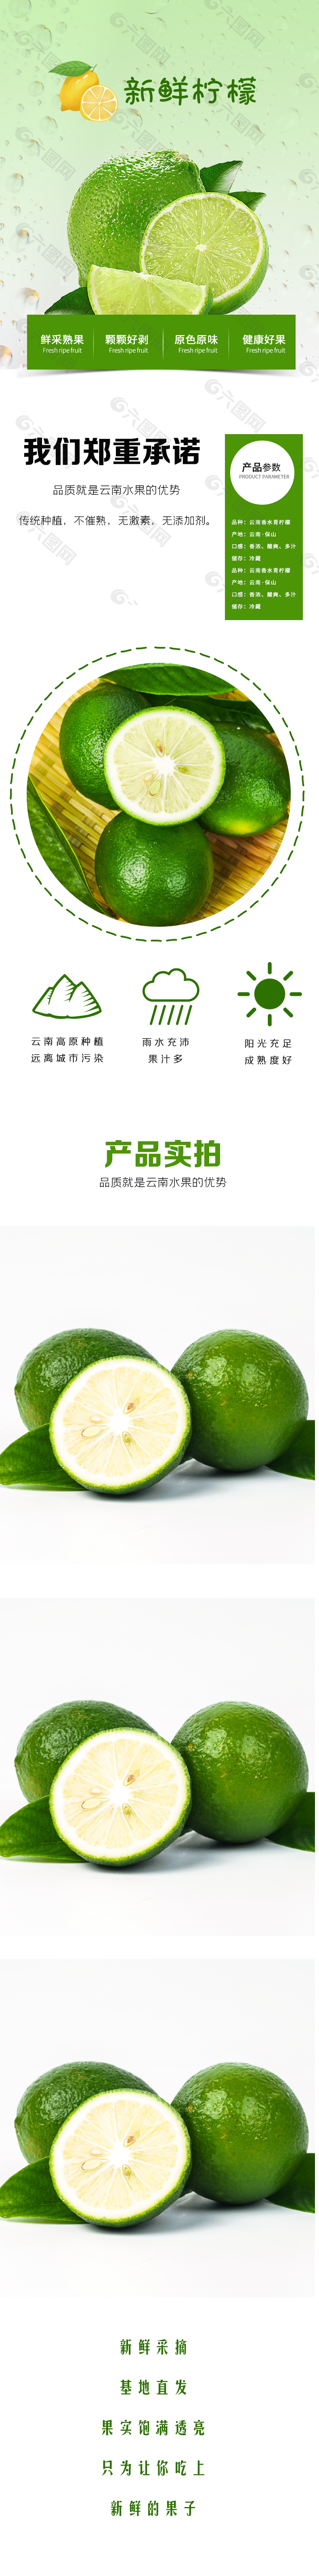 绿色健康新鲜柠檬淘宝电商详情页设计